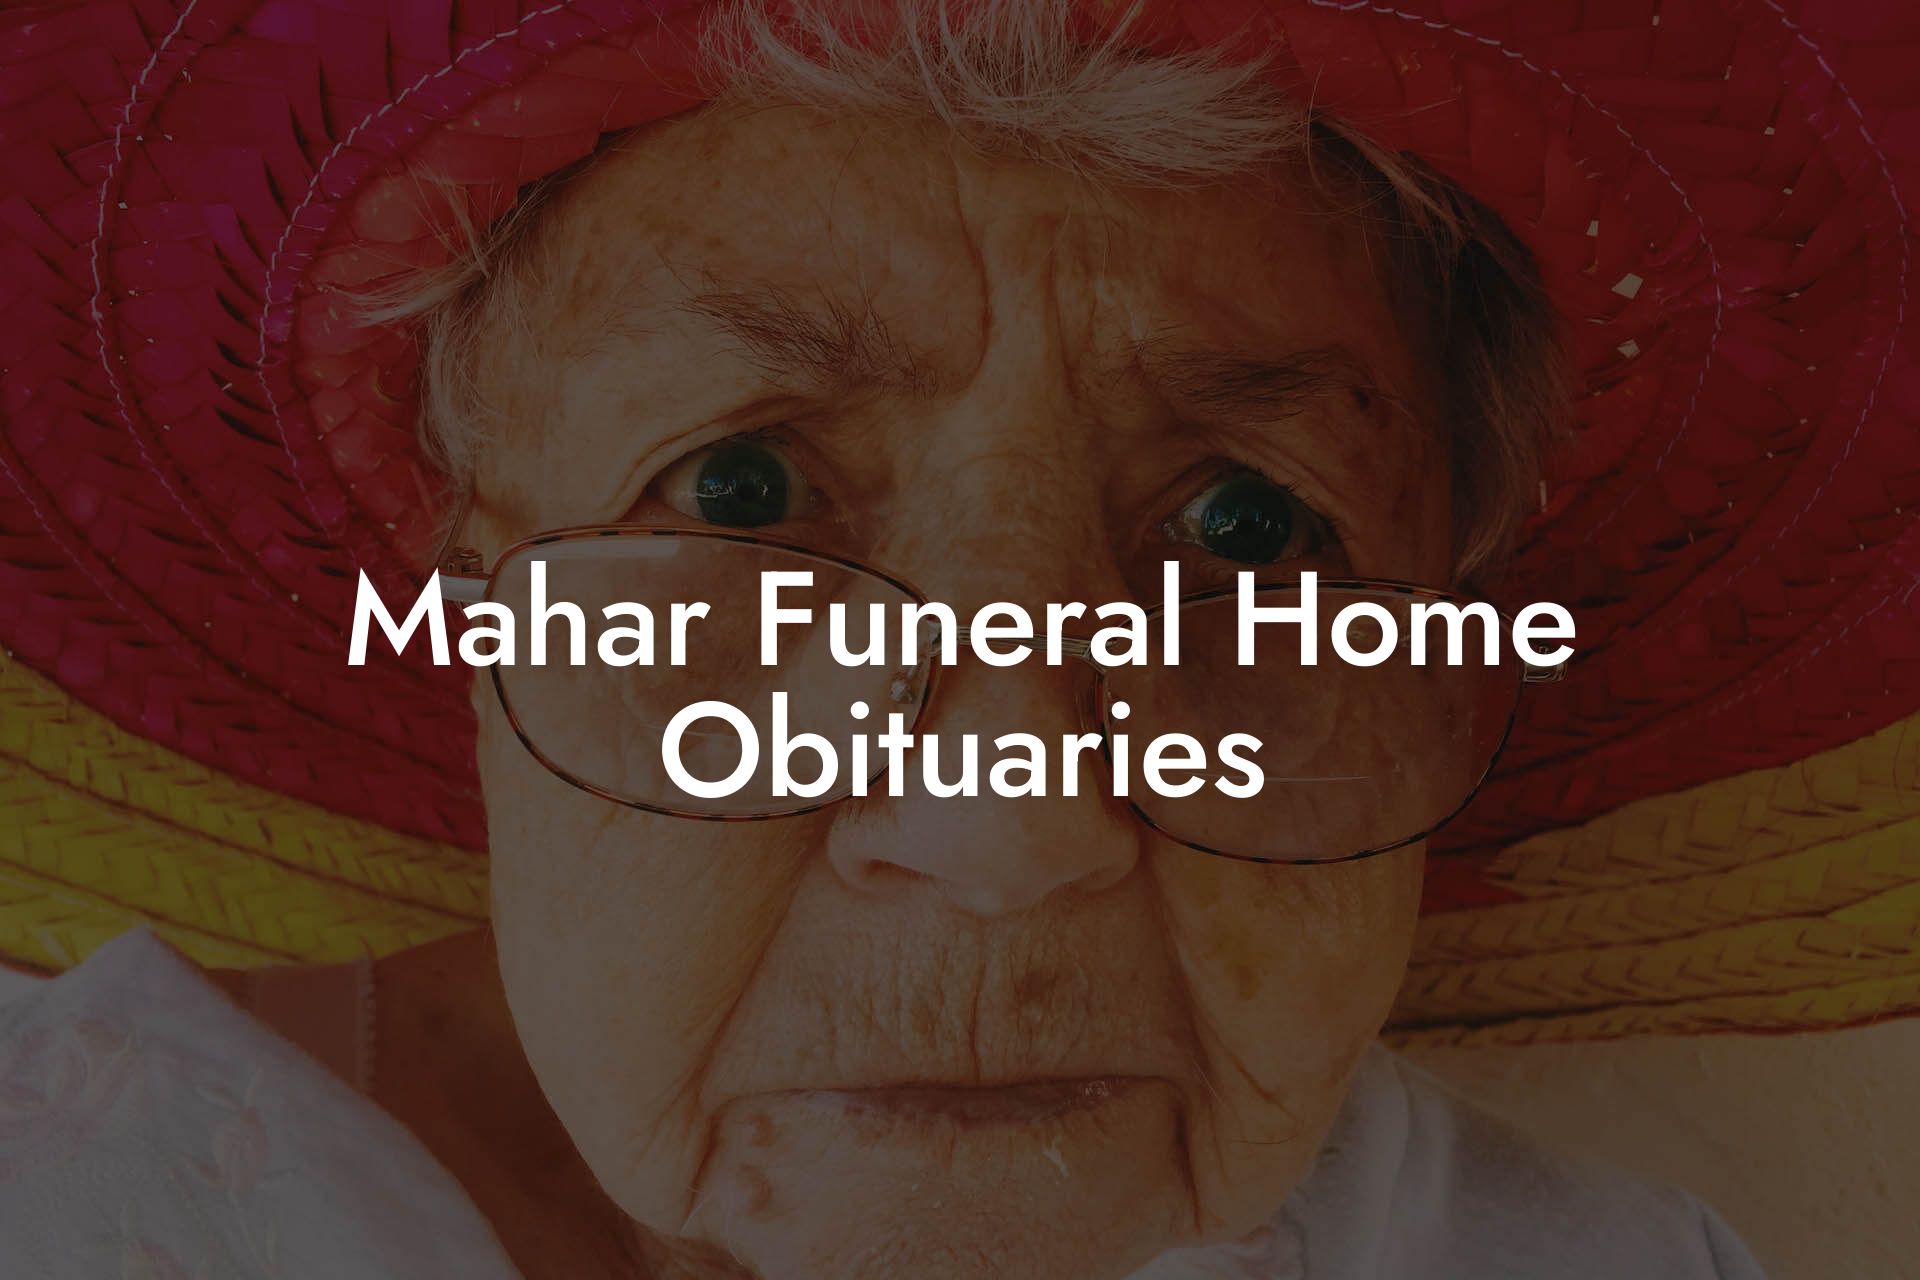 Mahar Funeral Home Obituaries